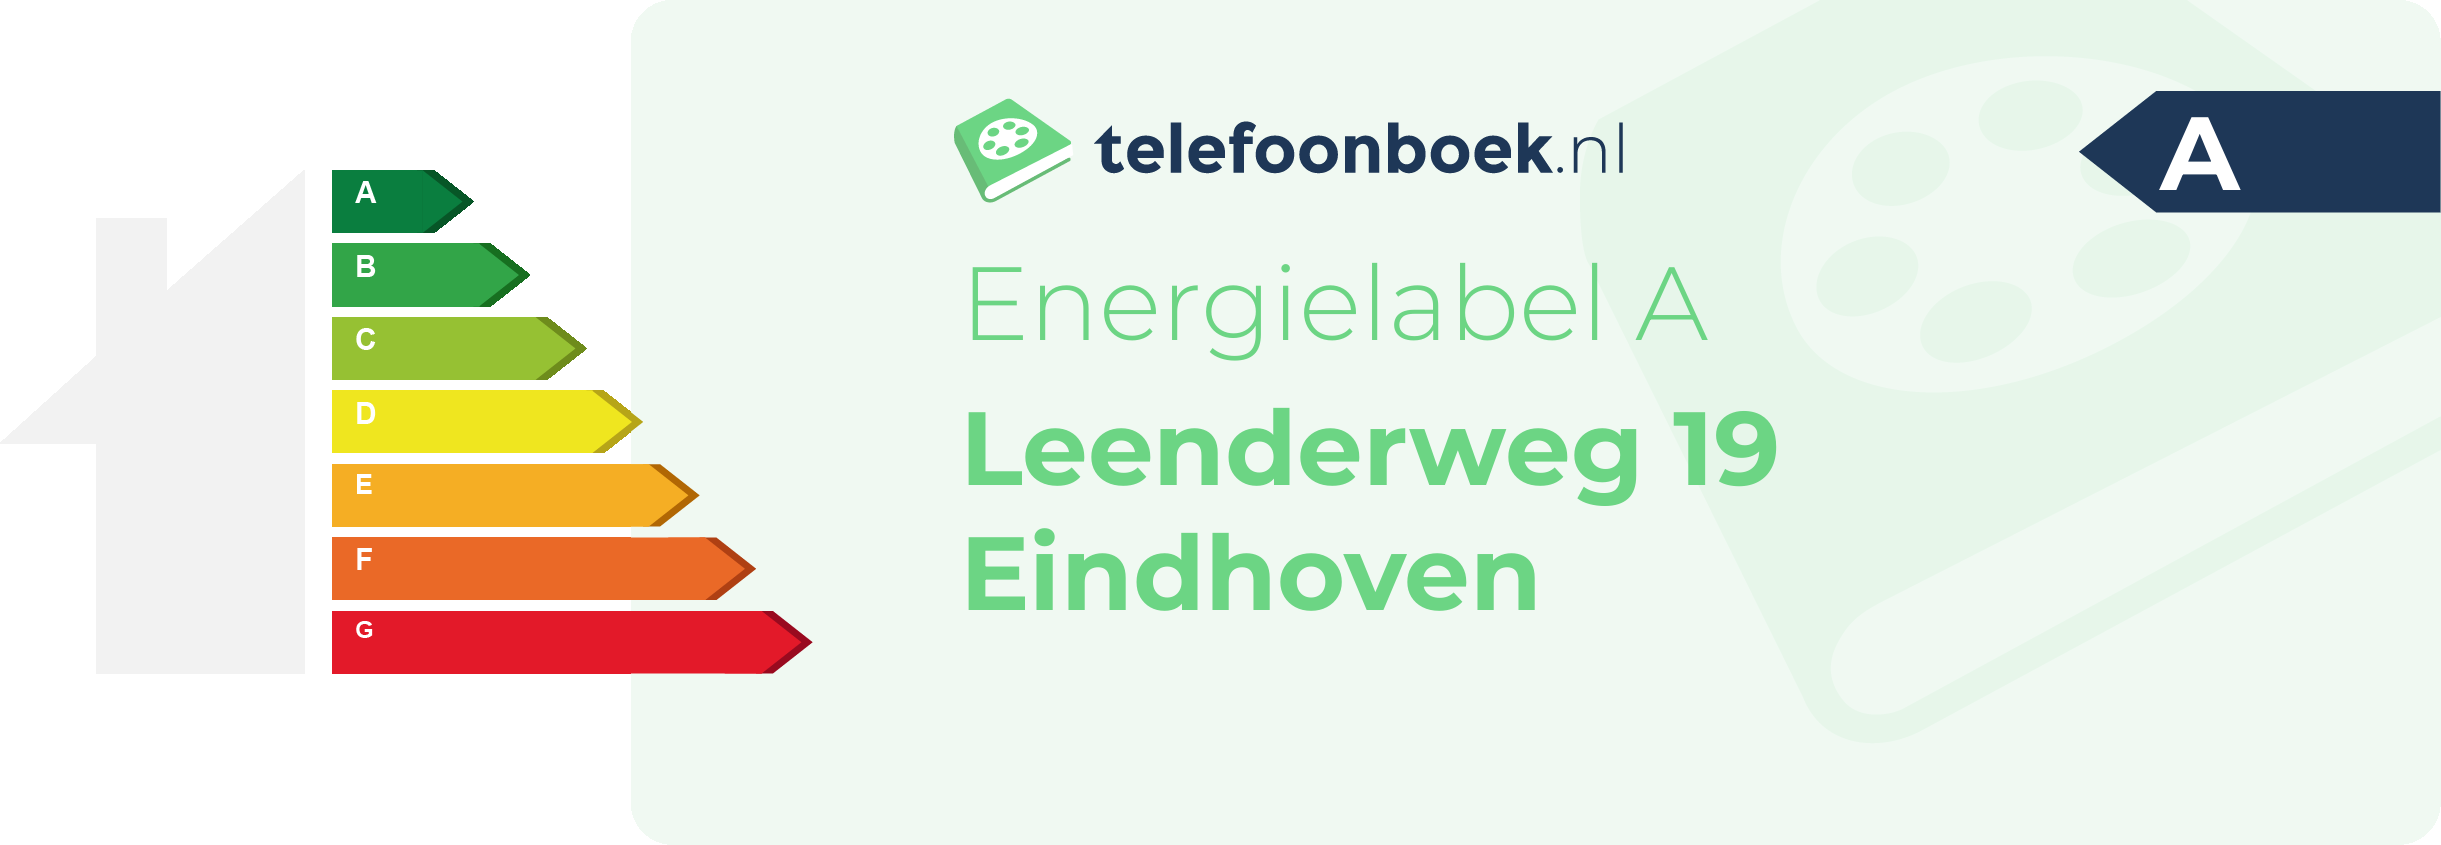 Energielabel Leenderweg 19 Eindhoven